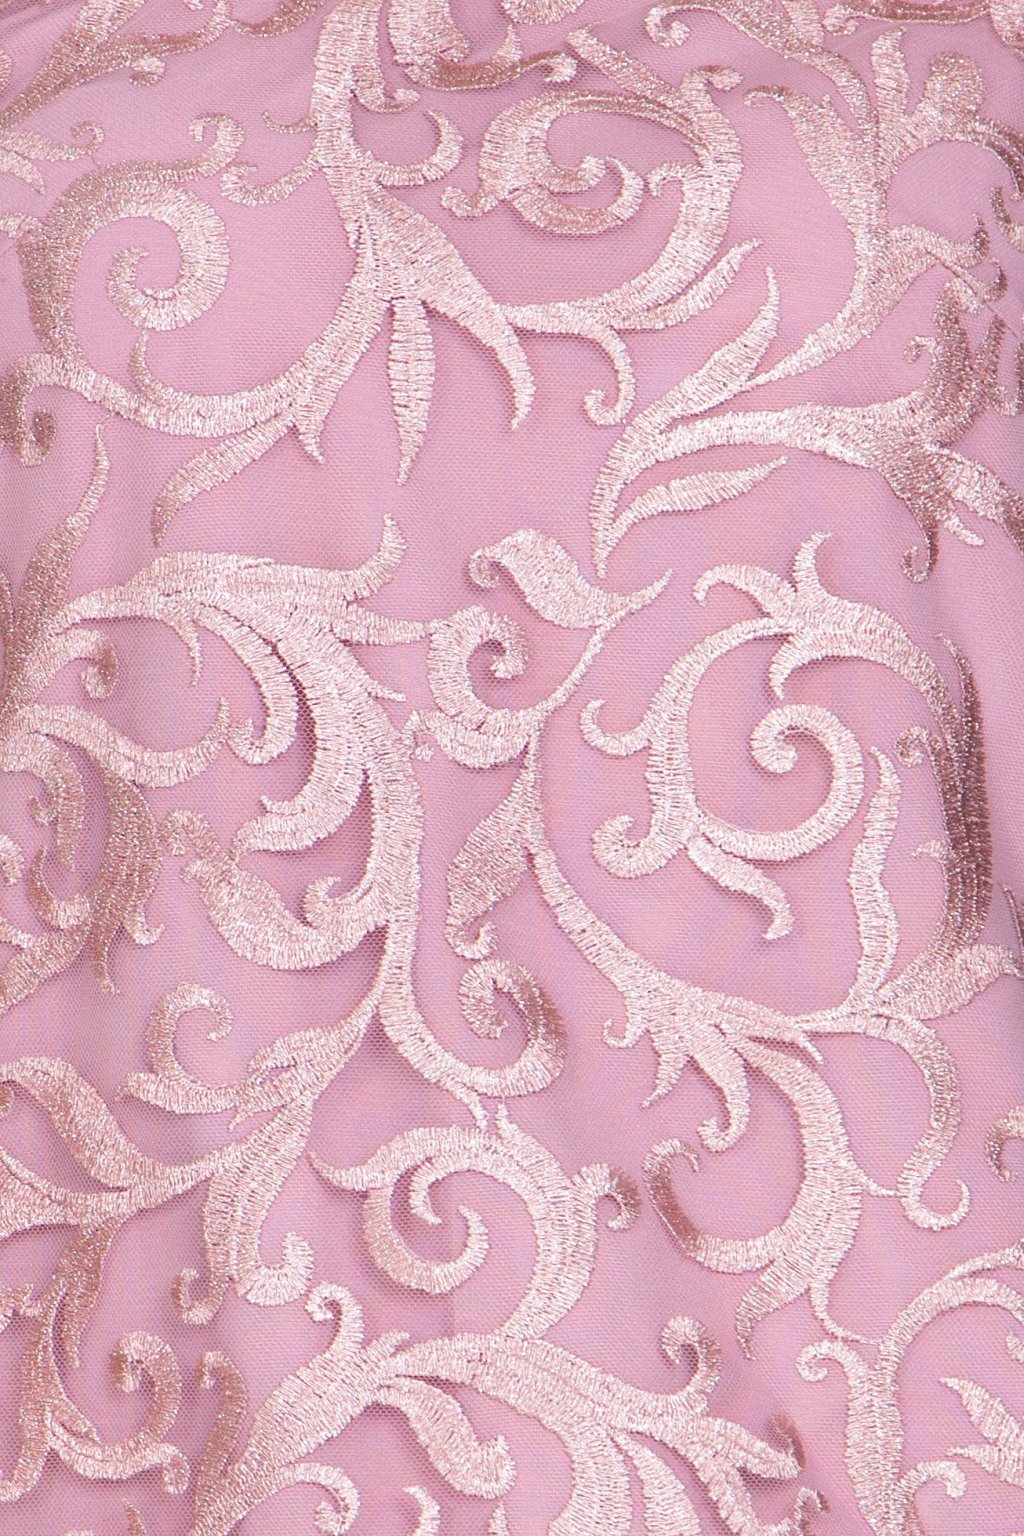 Платье Жасмин цвет пудра П-216-2 - 3